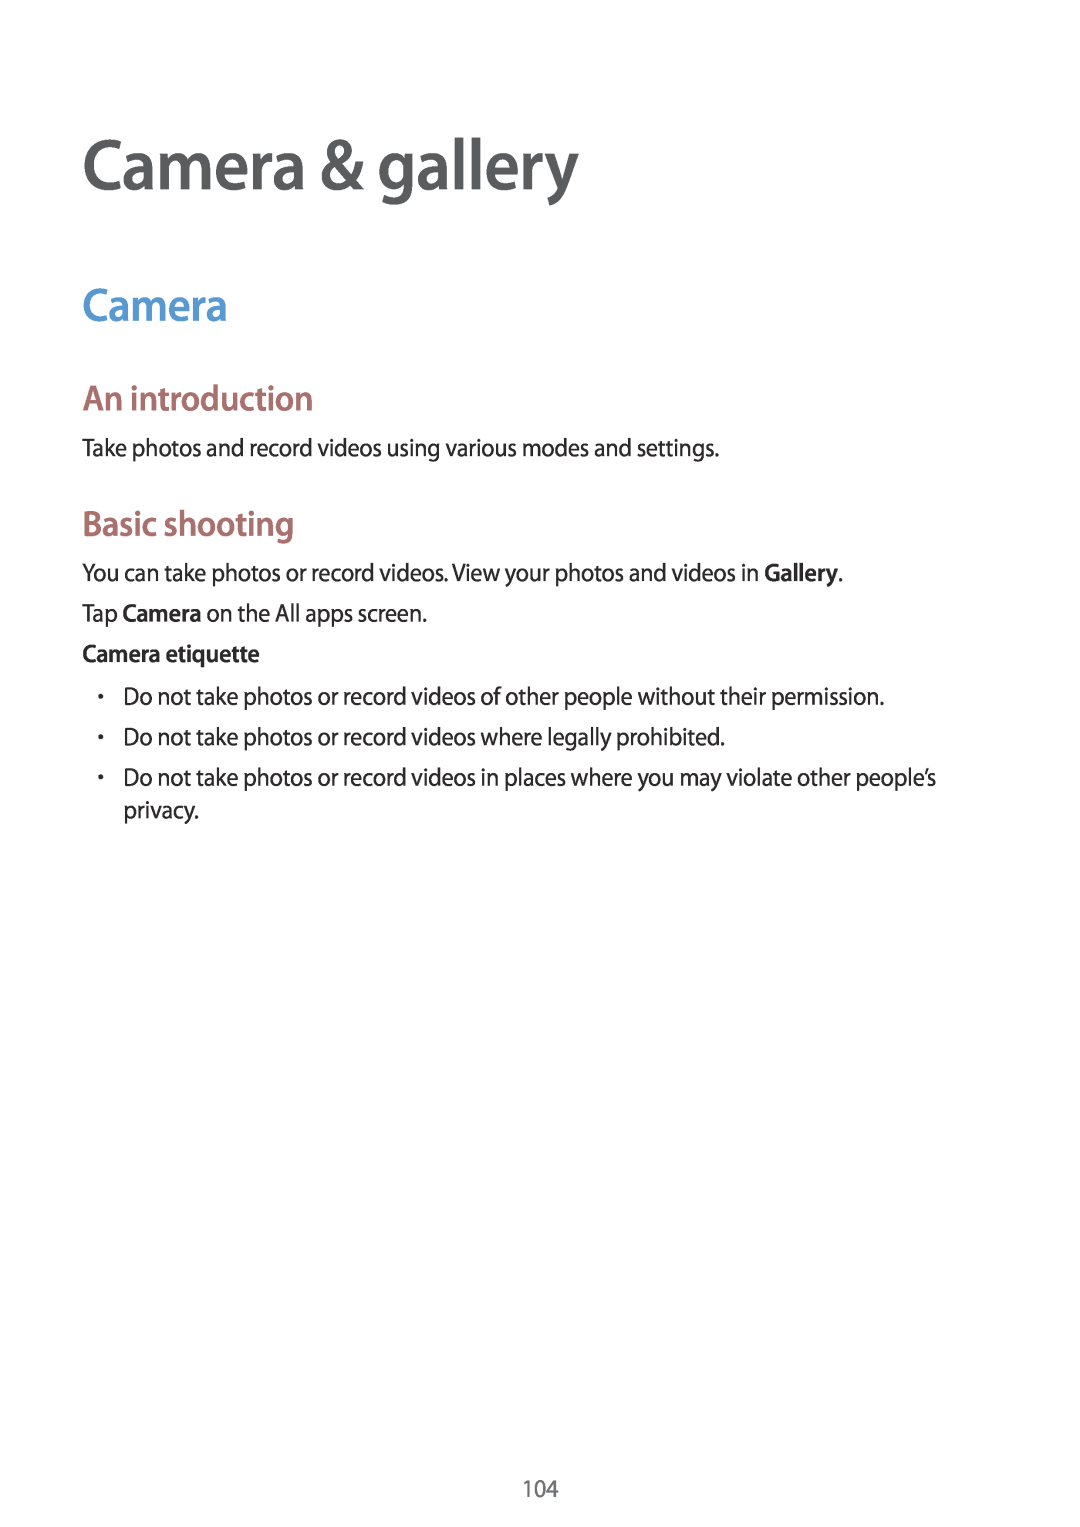 Samsung SM-N915FZWYXEF, SM-N915FZWYEUR, SM-N915FZKYATO Camera & gallery, Basic shooting, Camera etiquette, An introduction 